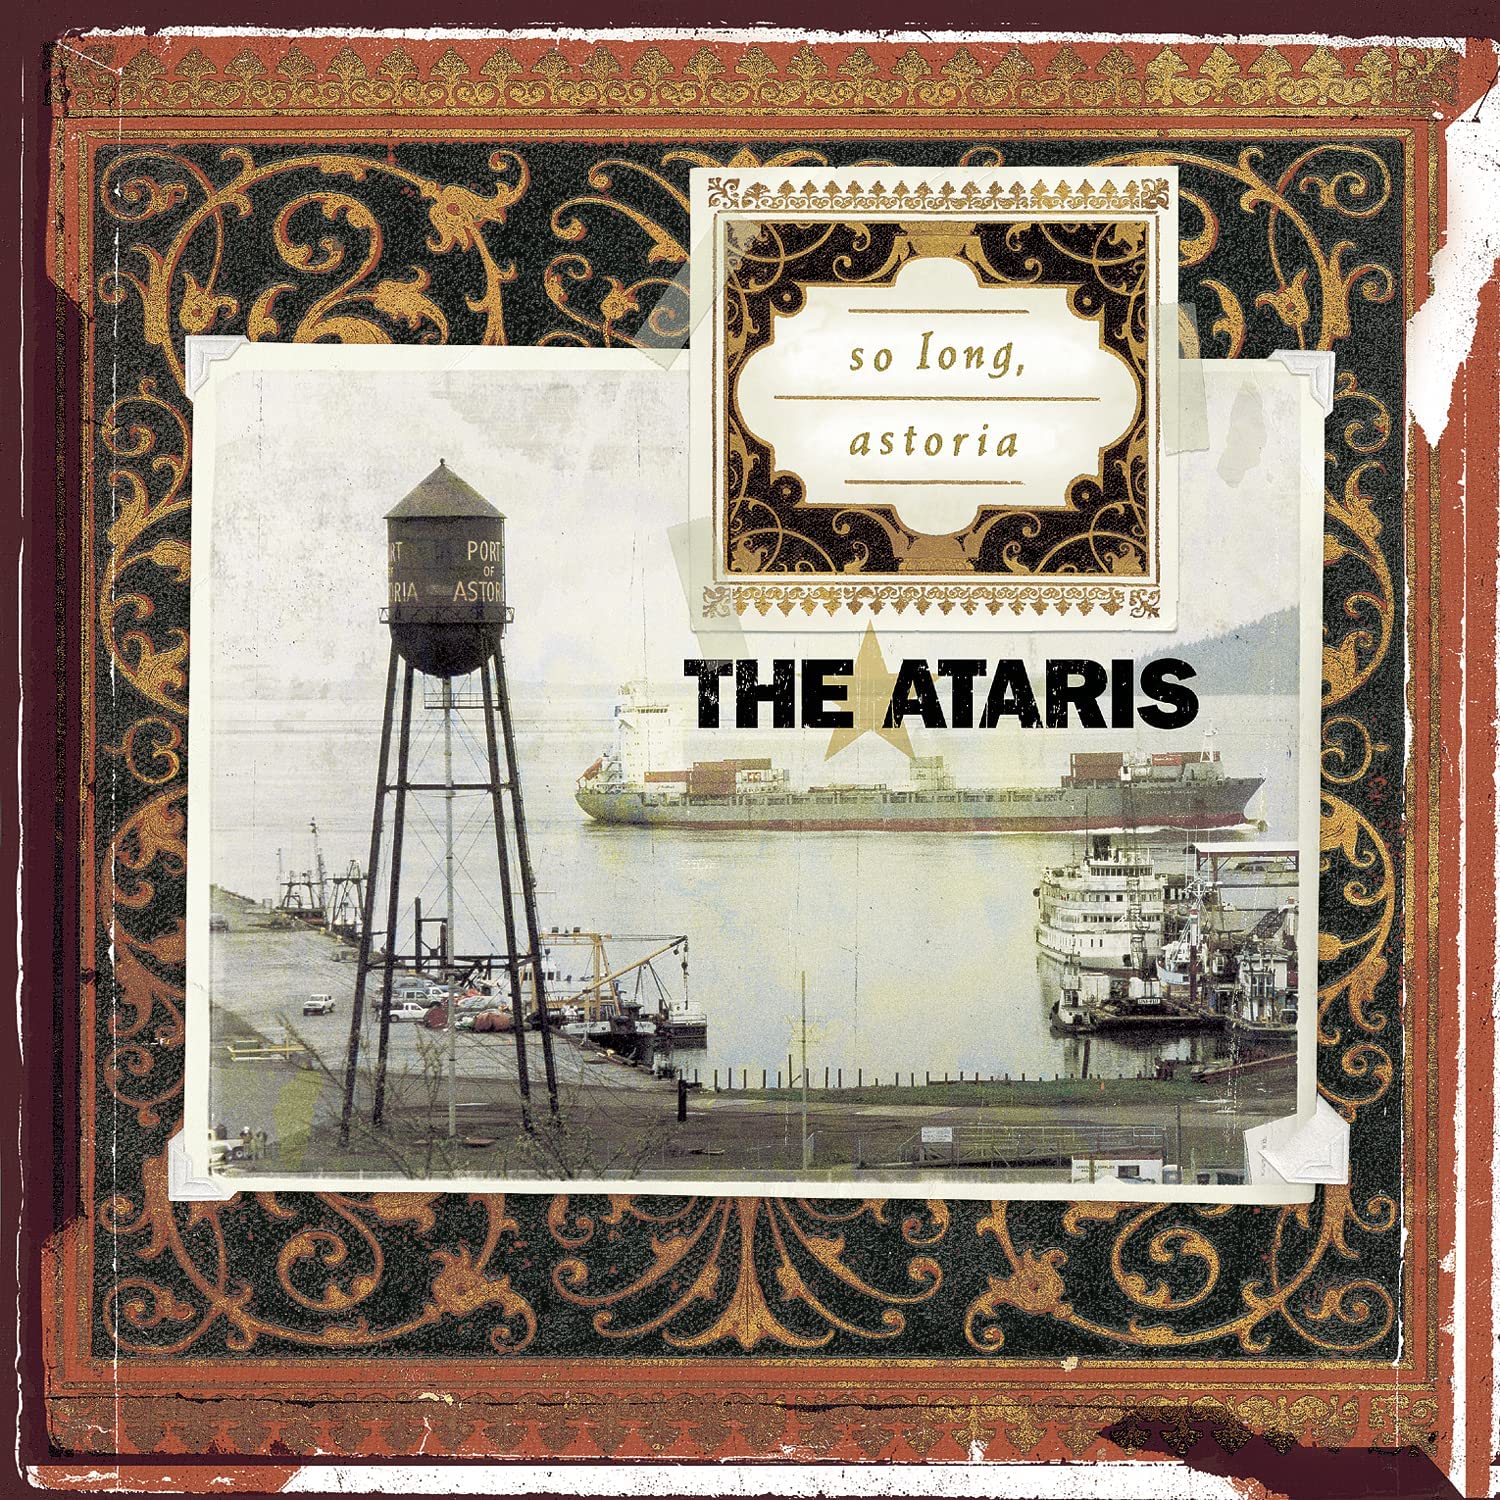 So Long, Astoria / The Ataris